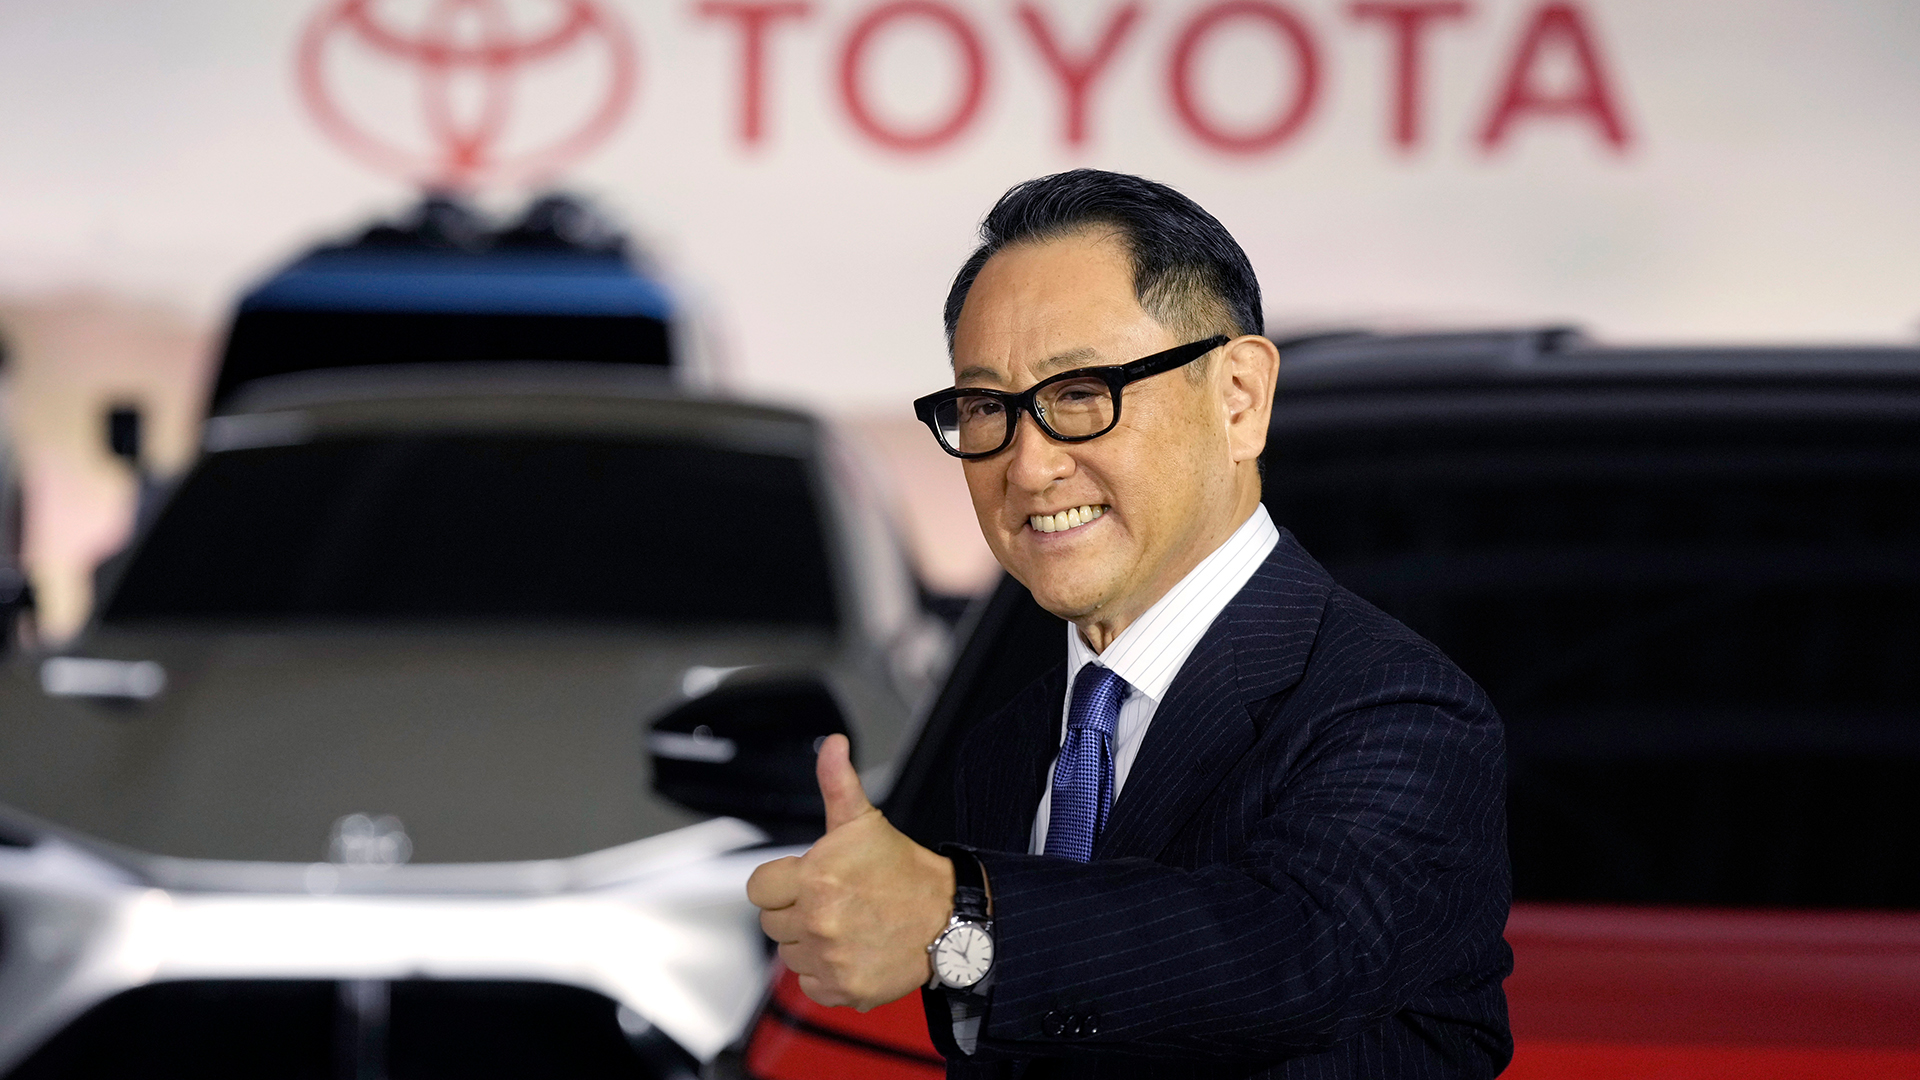 Autoriese Toyota kündigt Chefwechsel an